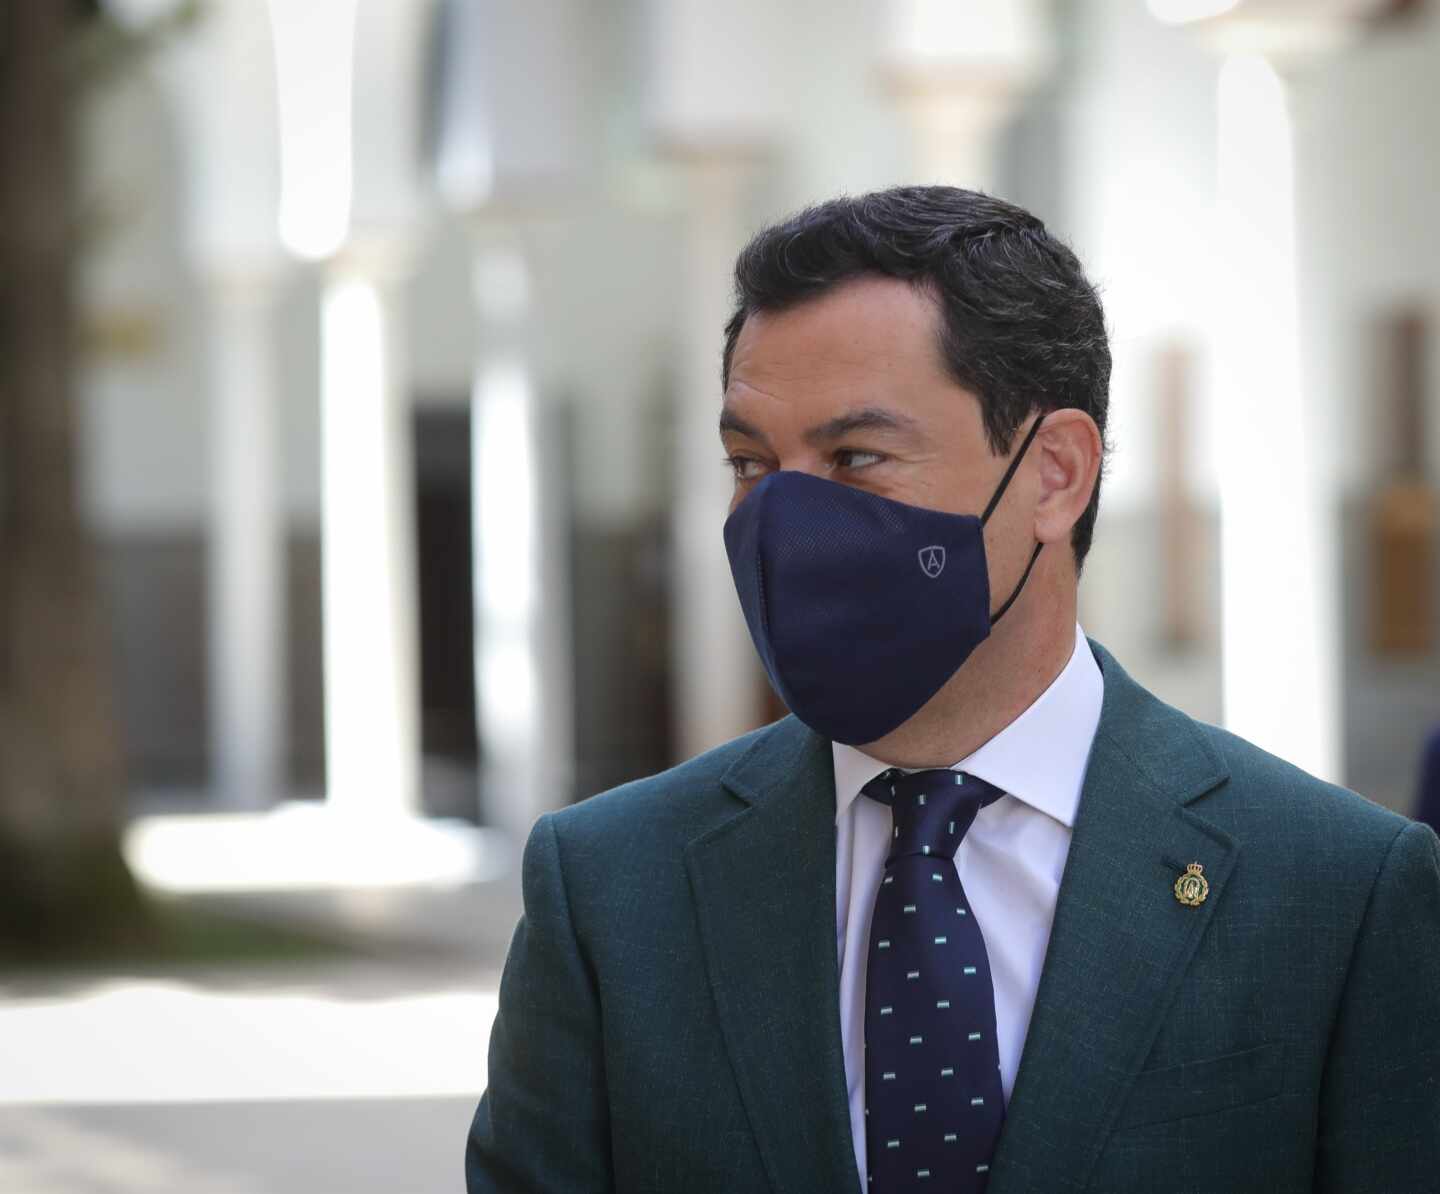 Juanma Moreno propondrá el lunes que sea obligatorio el uso de la mascarilla en Andalucía